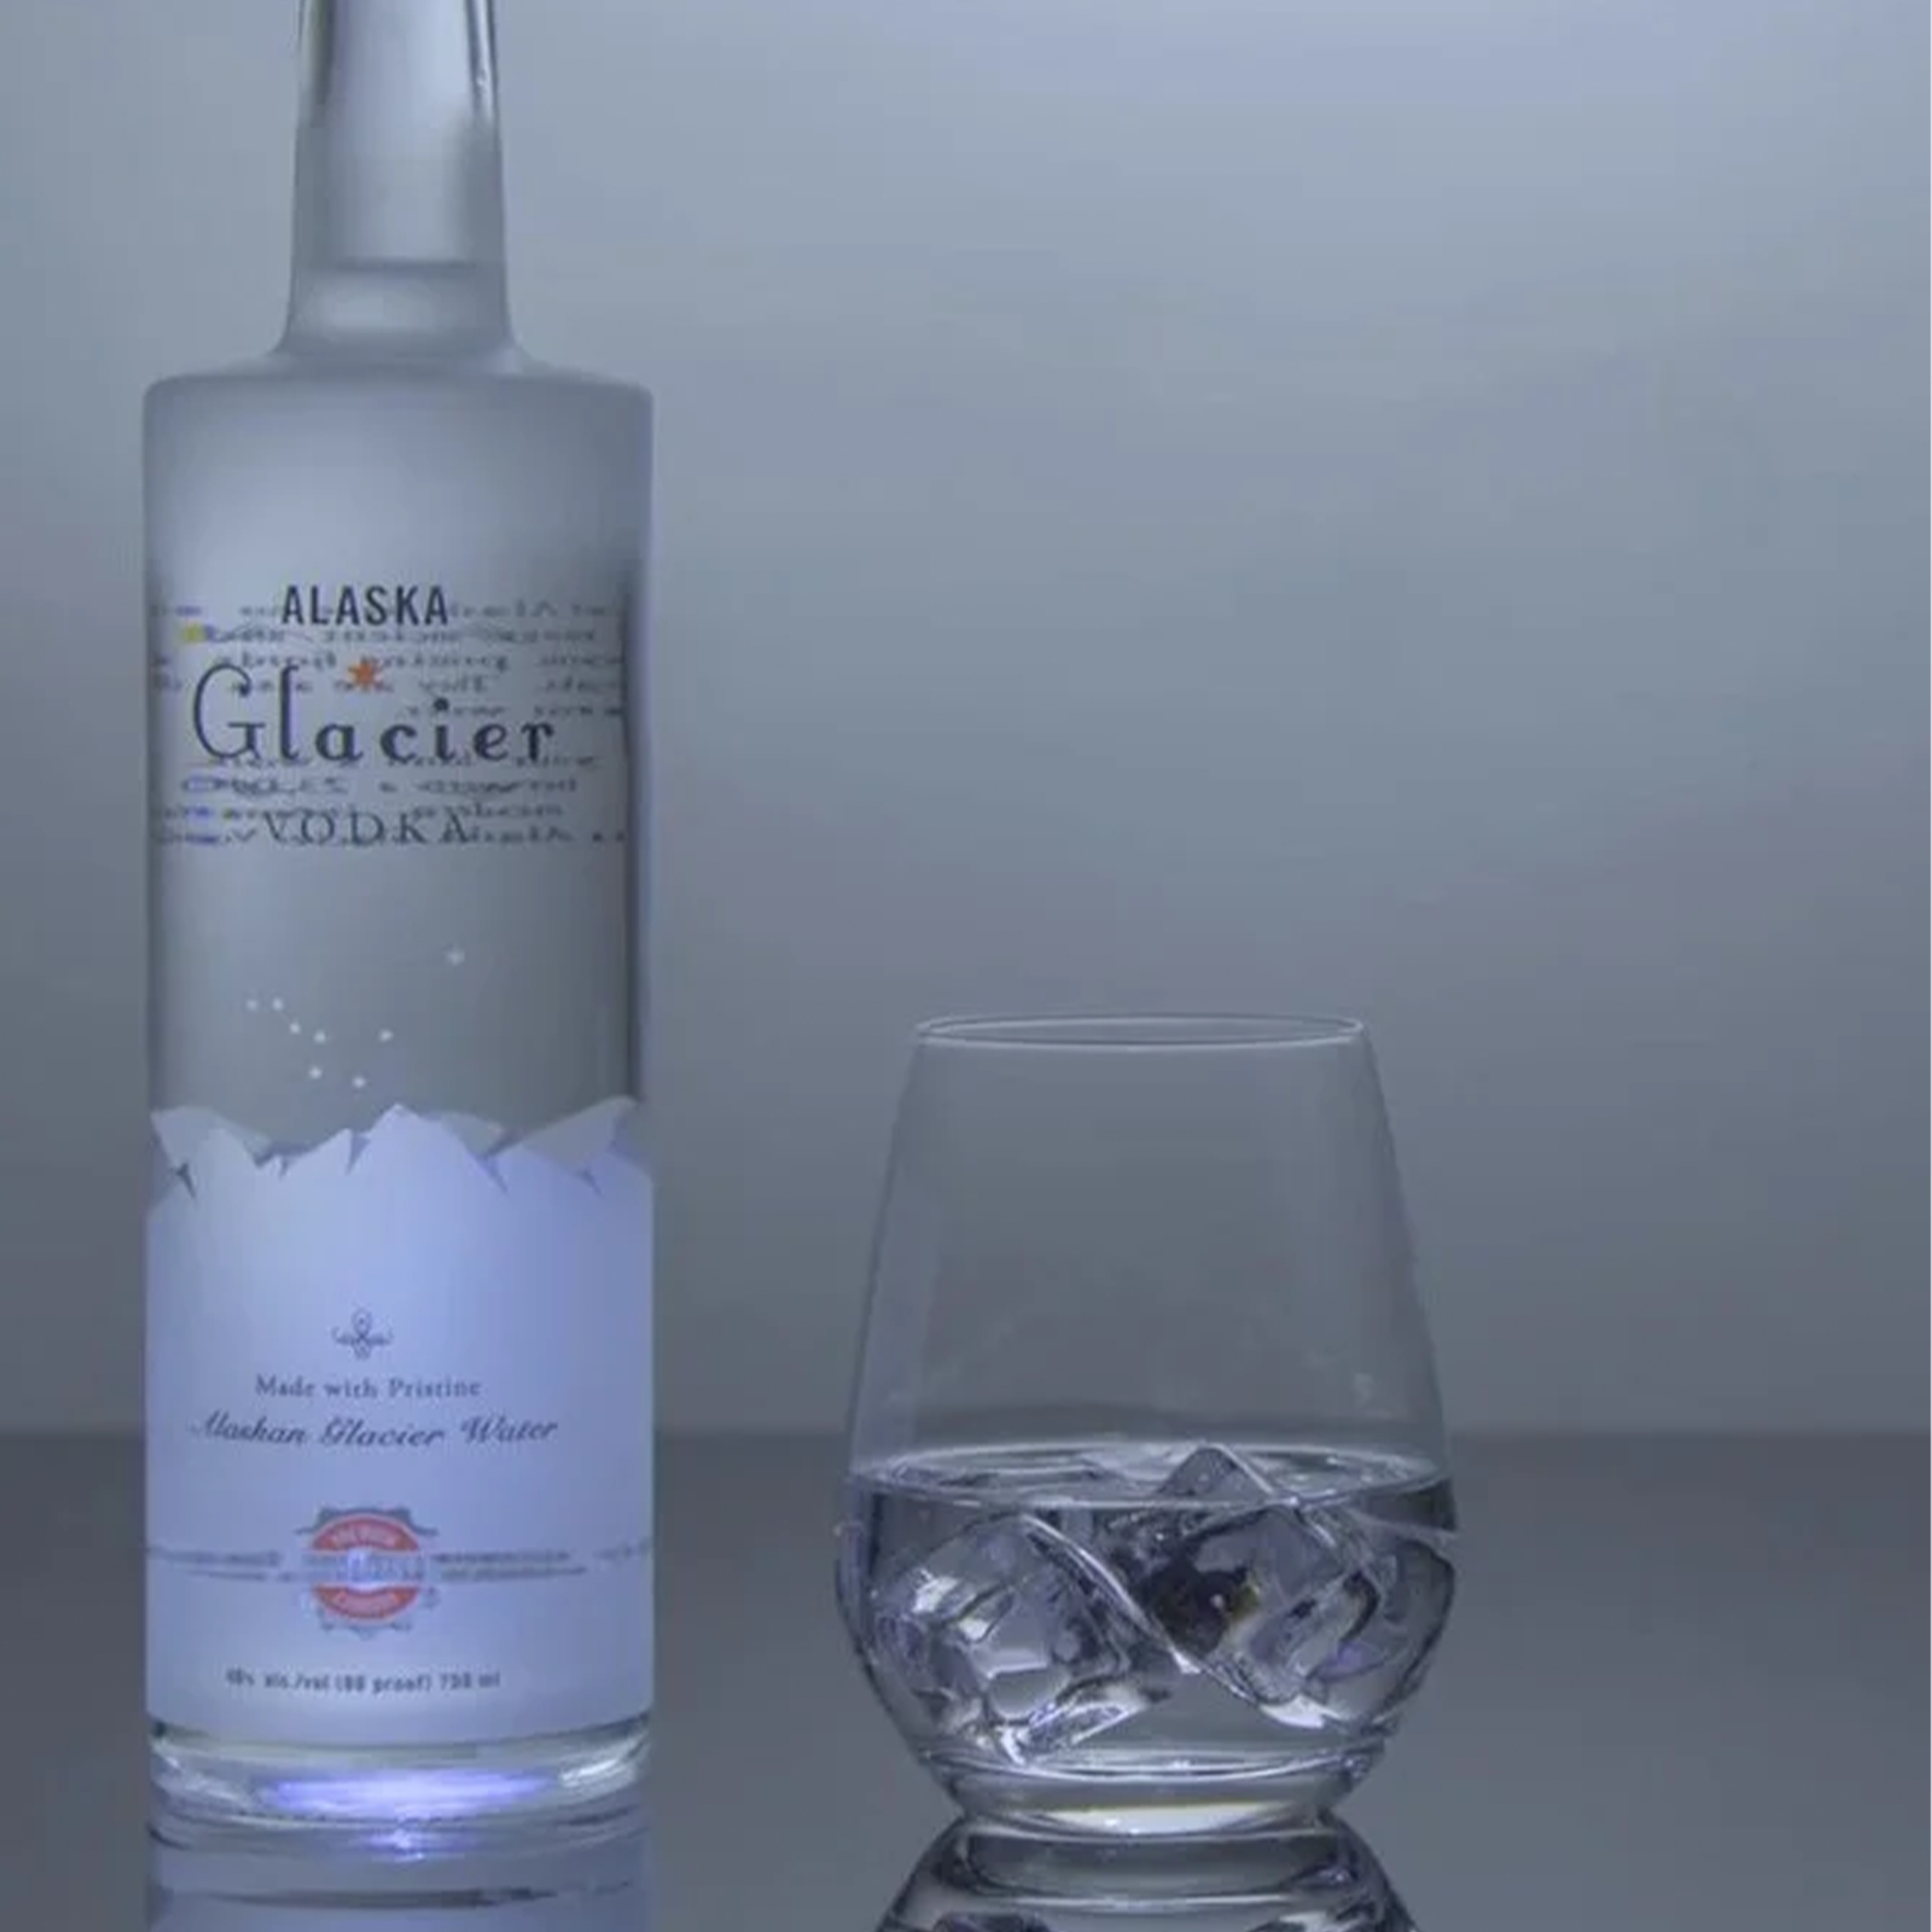 Alaska Glacier Vodka